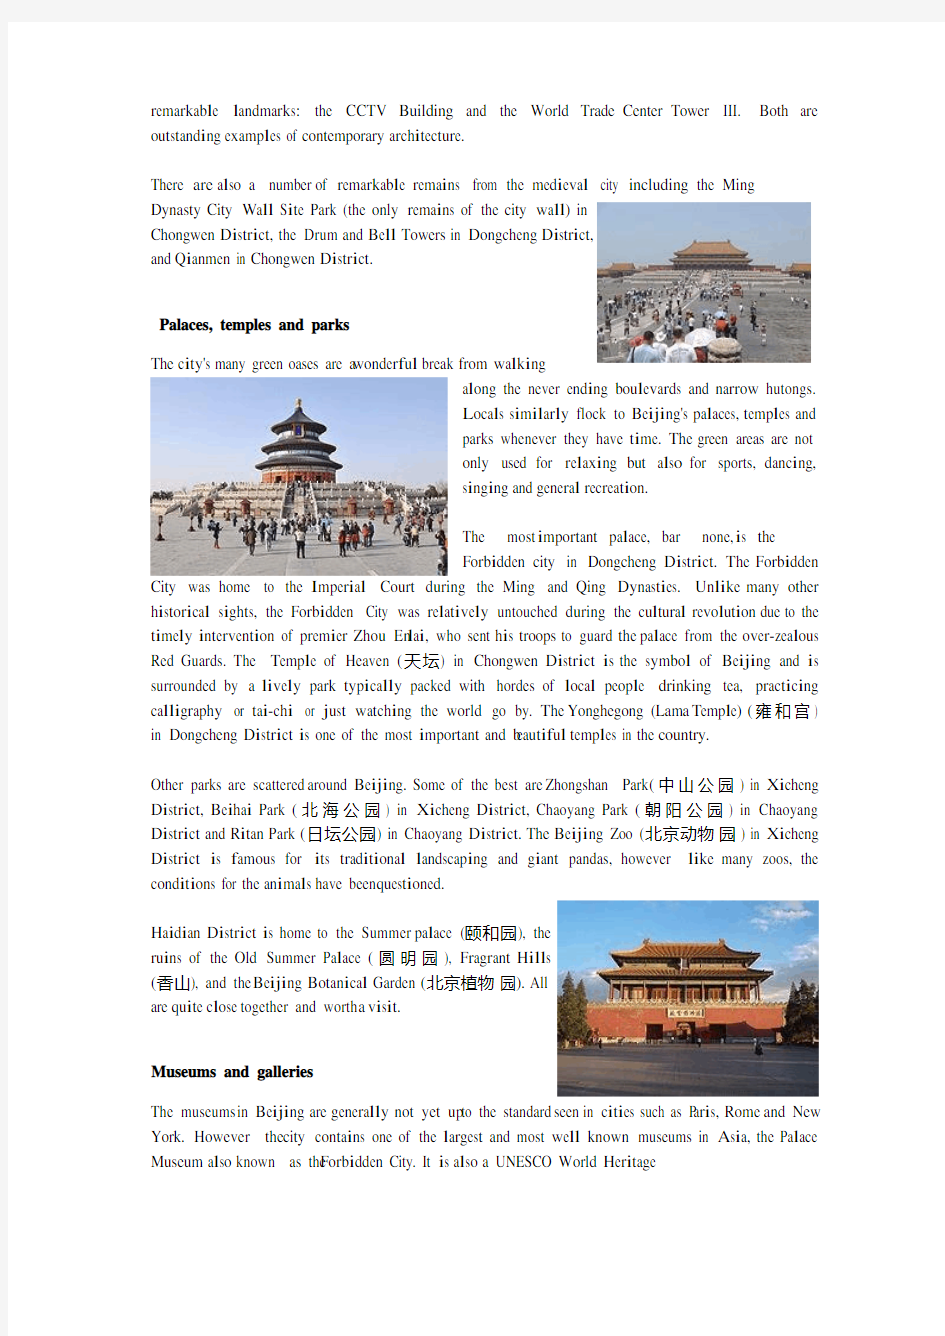 北京英文旅游指南手册_Beijing travel guide